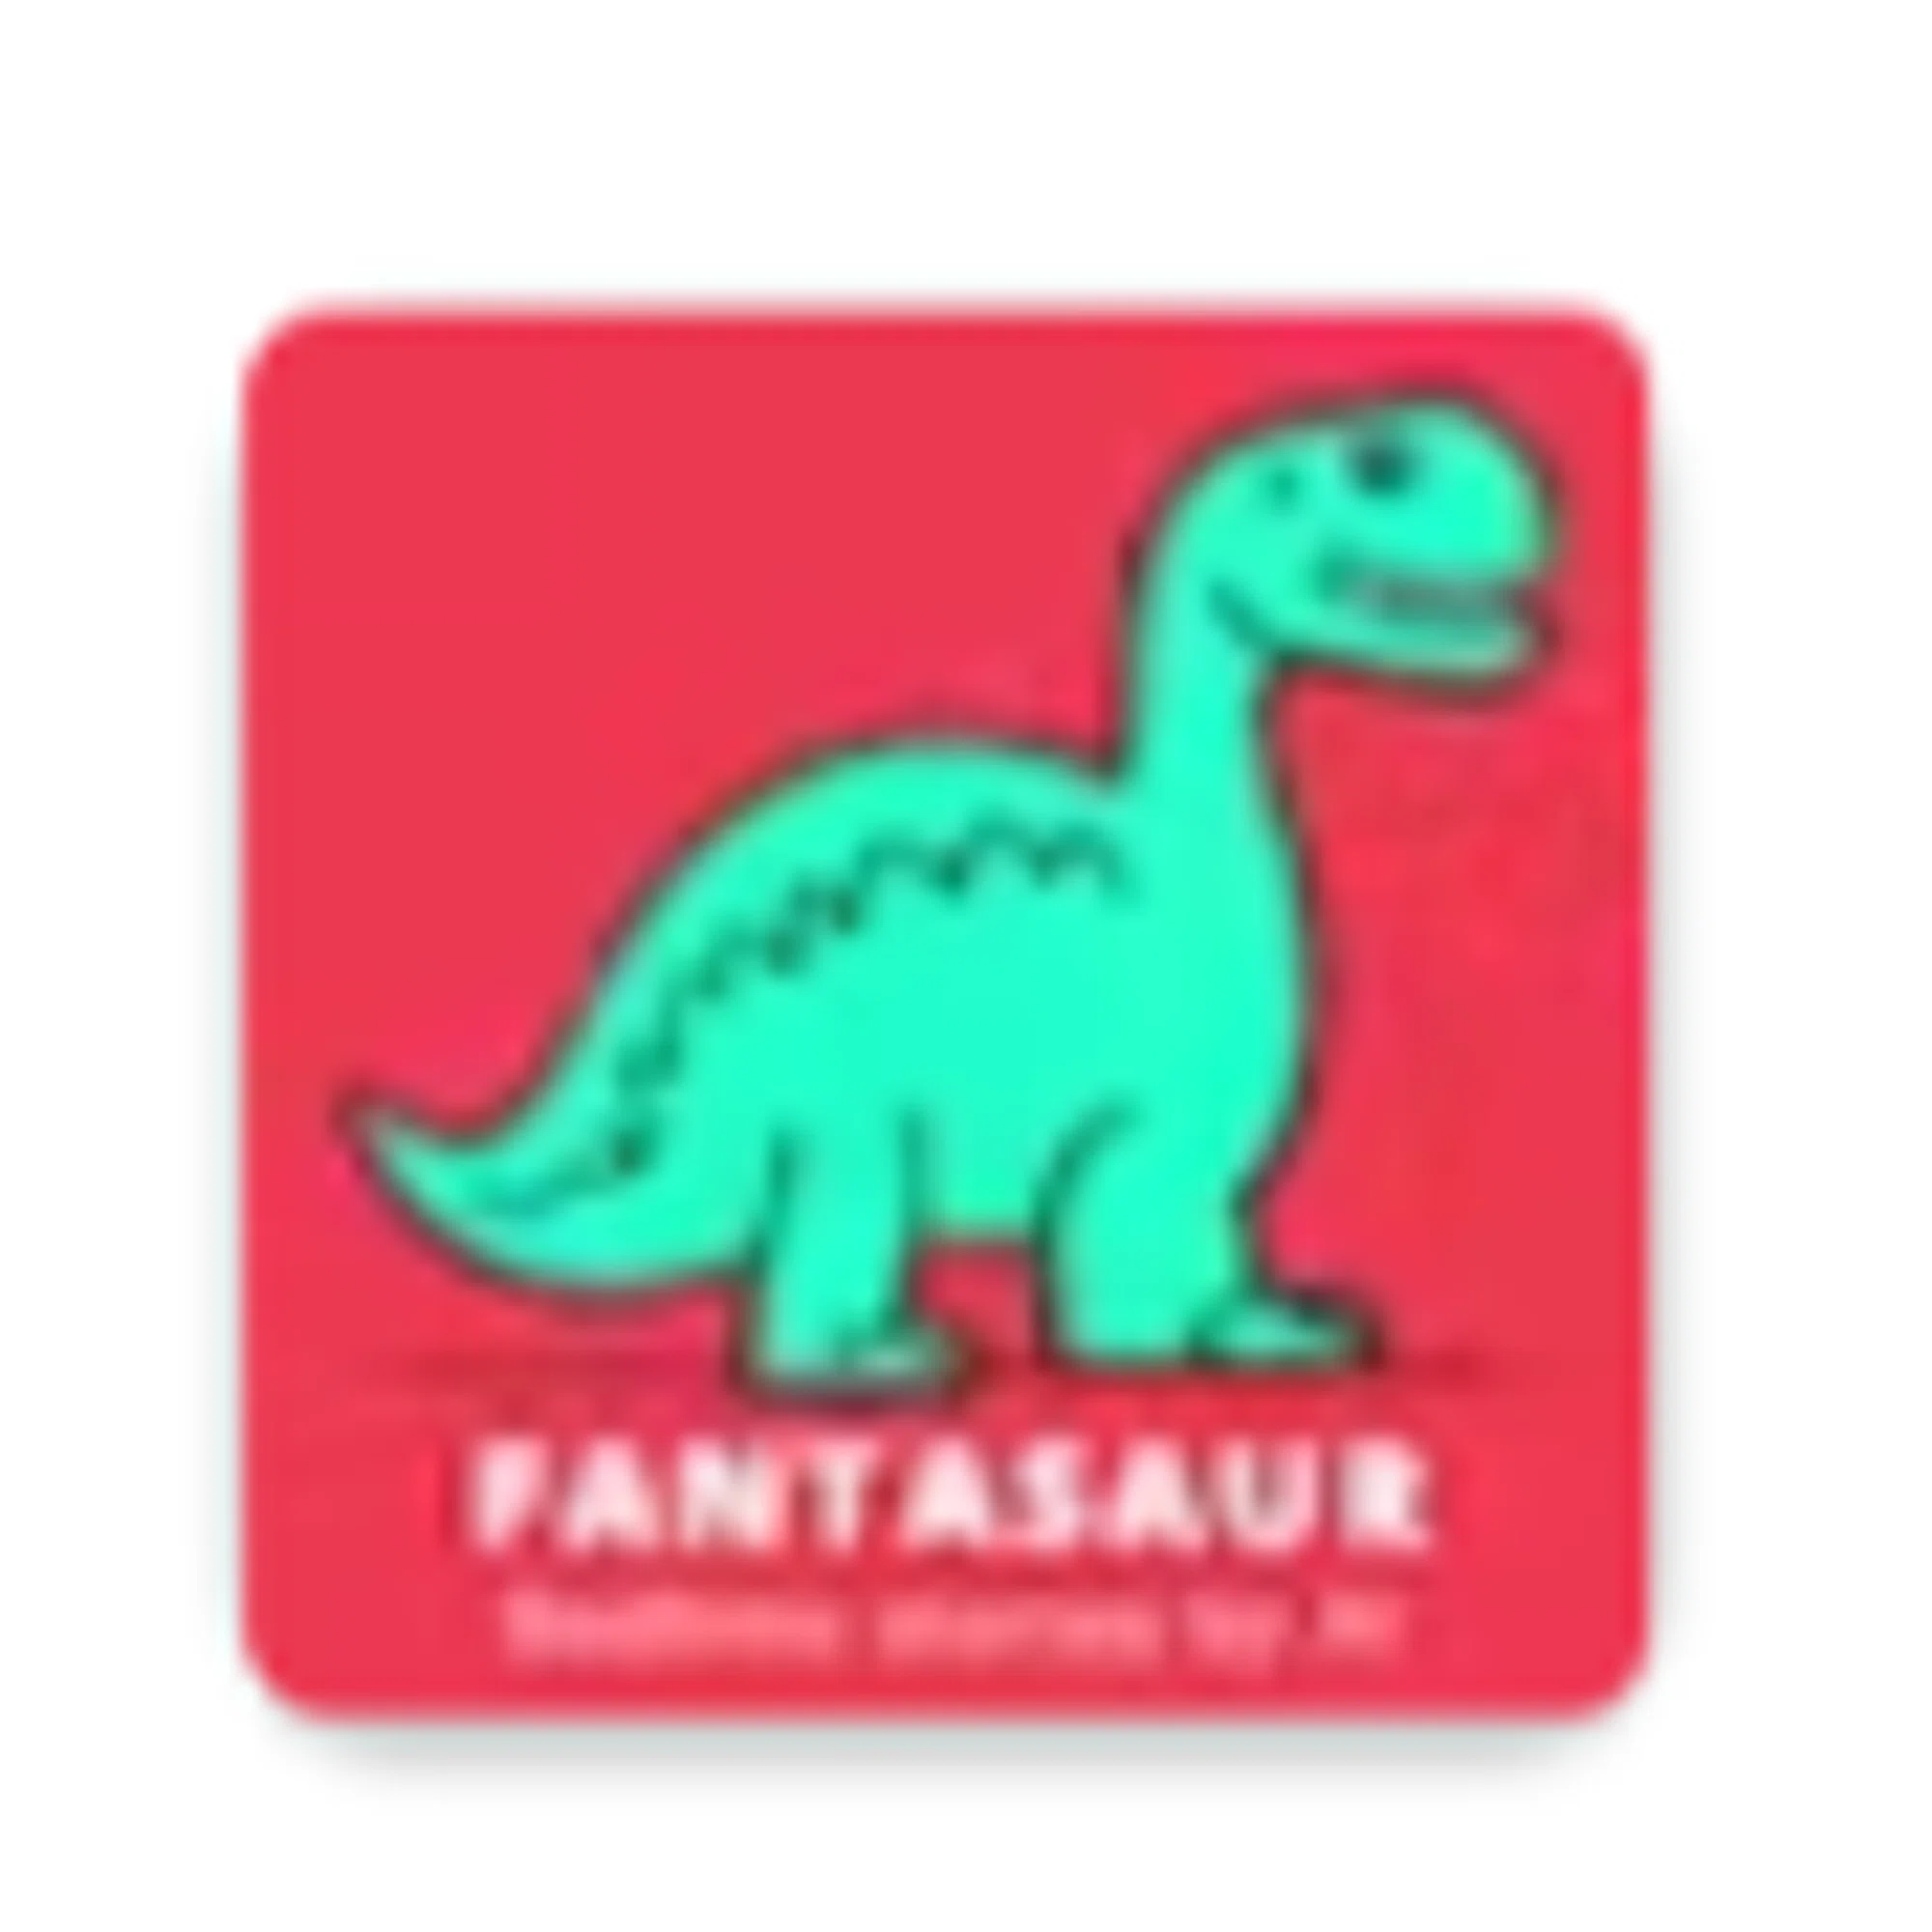 Fantasaur